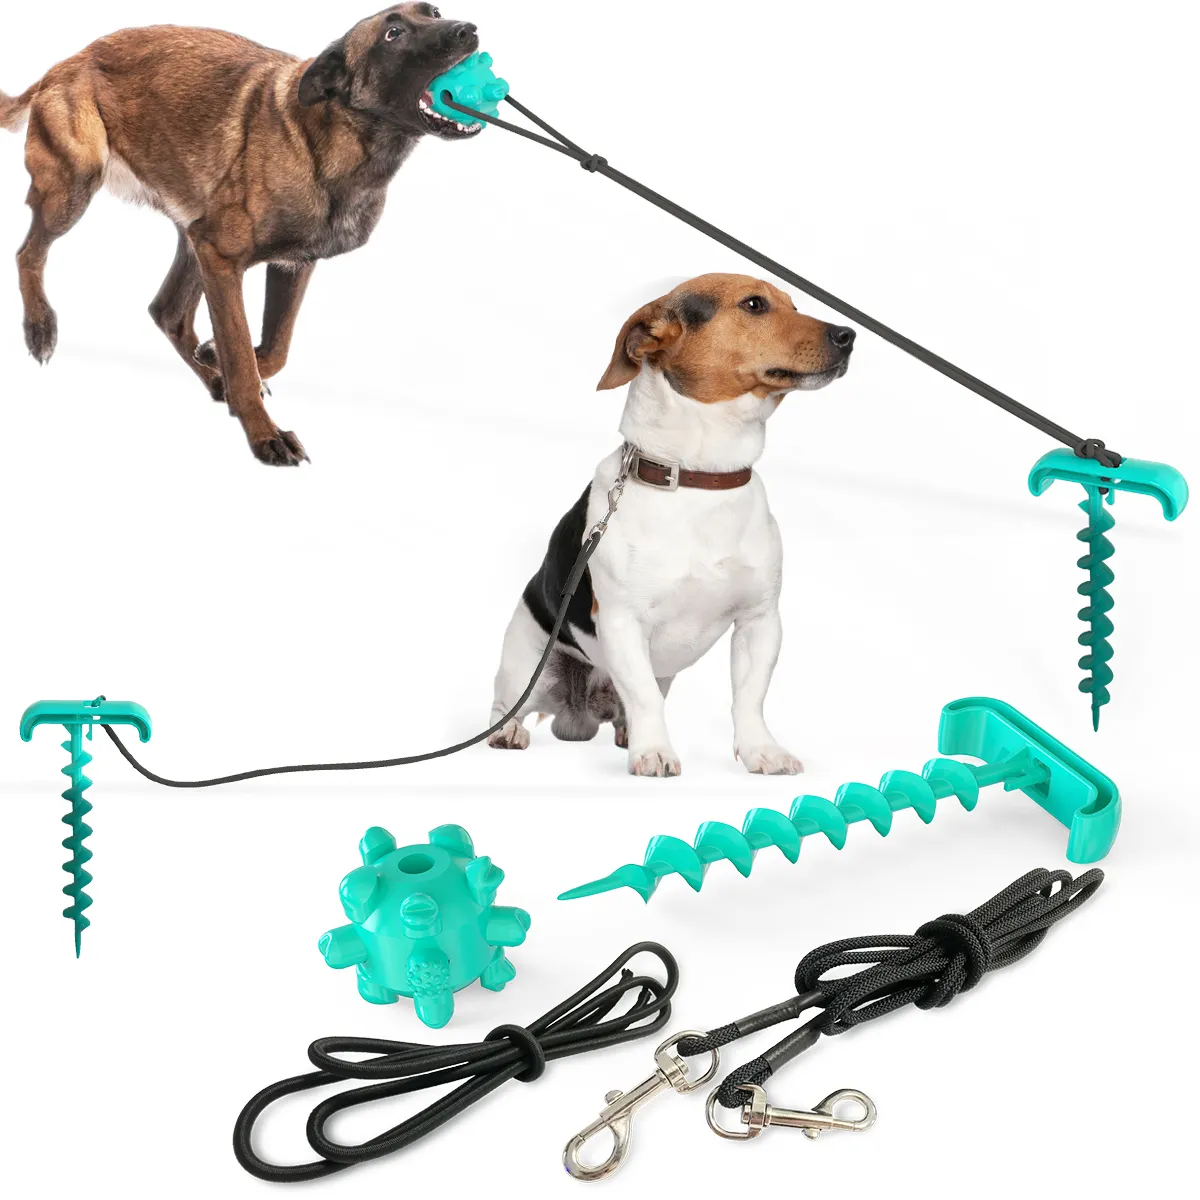 2020 Outdoor tragbare Tie-Out Stick Hund Fixed Pile Binden Hund Leine Set gebunden Boden Pet Anchor Pfähle mit Molar Bite Toy